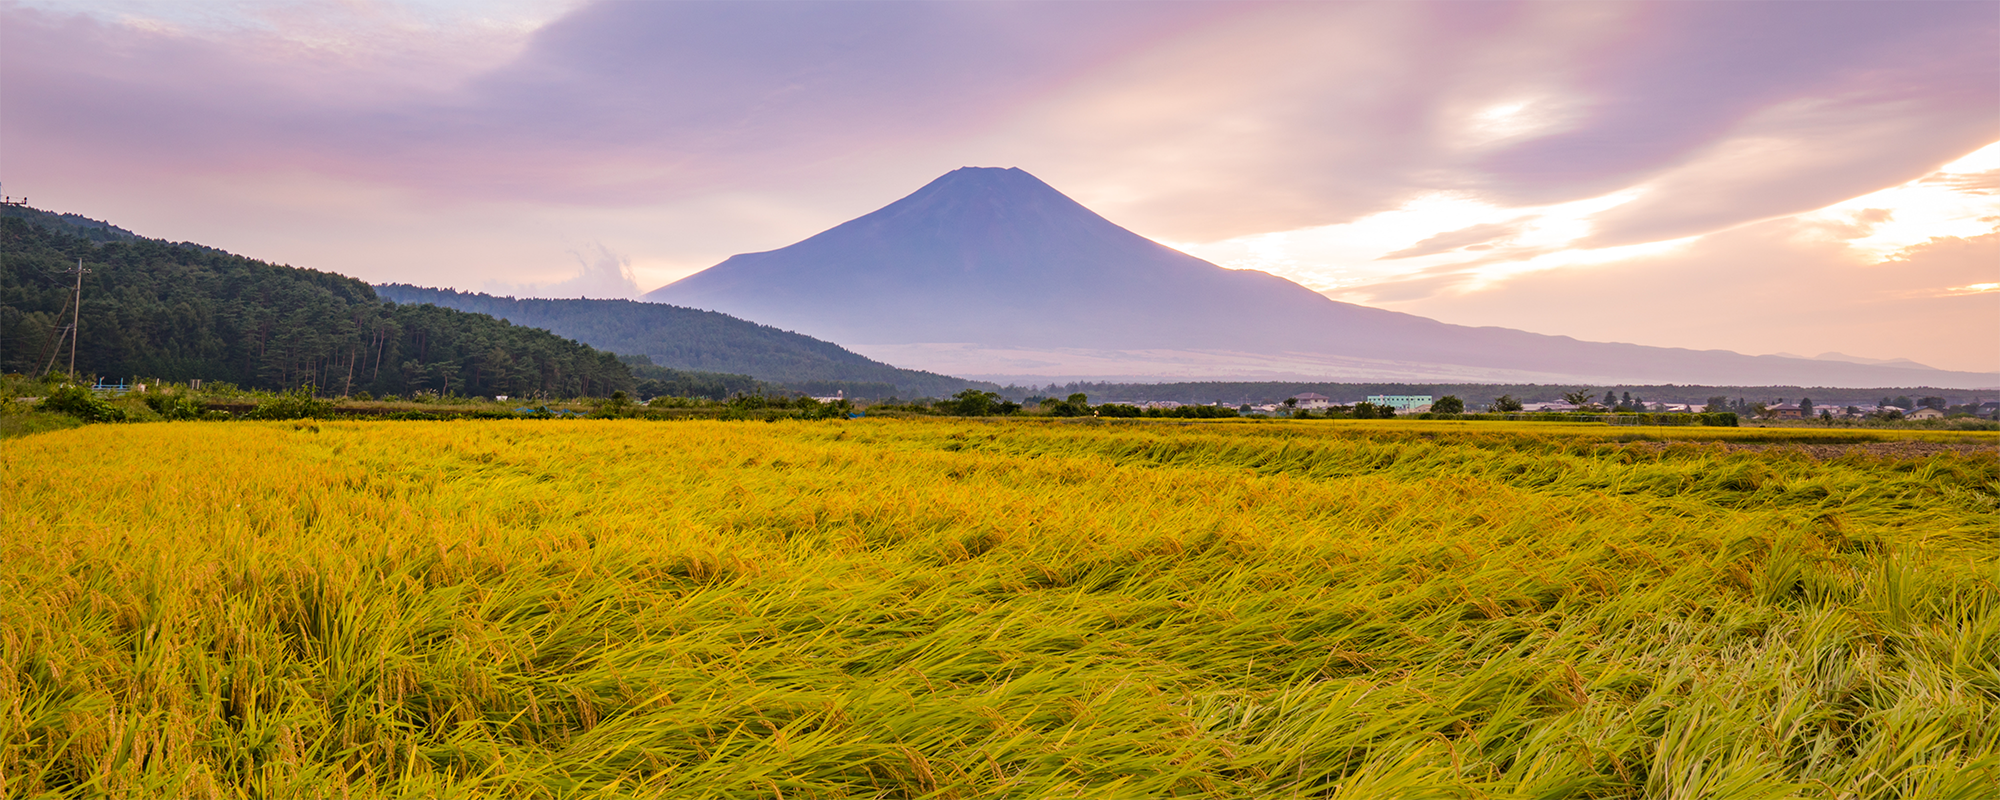 秋の内野のススキと富士山の画像